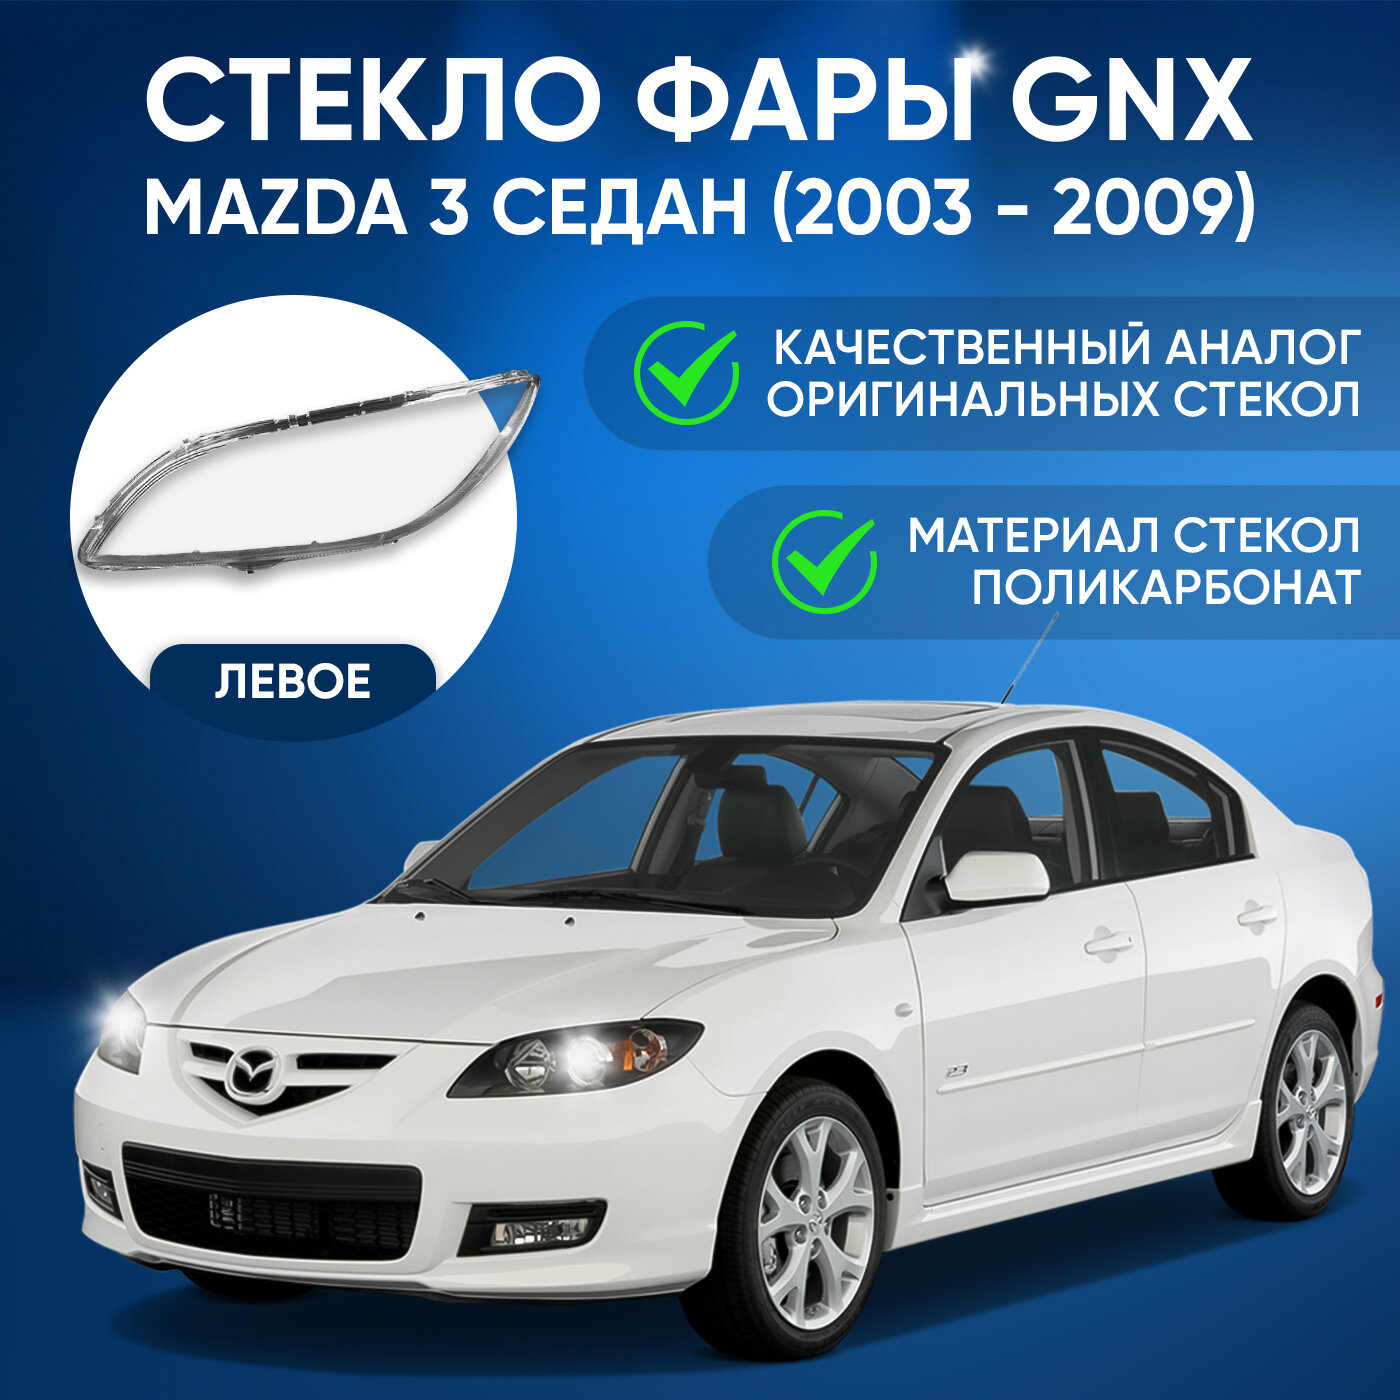 Стекло фары Mazda 3 BK седан (2003 - 2009 г. в.) правое GNX поликарбонат для автомобилей Мазда 3